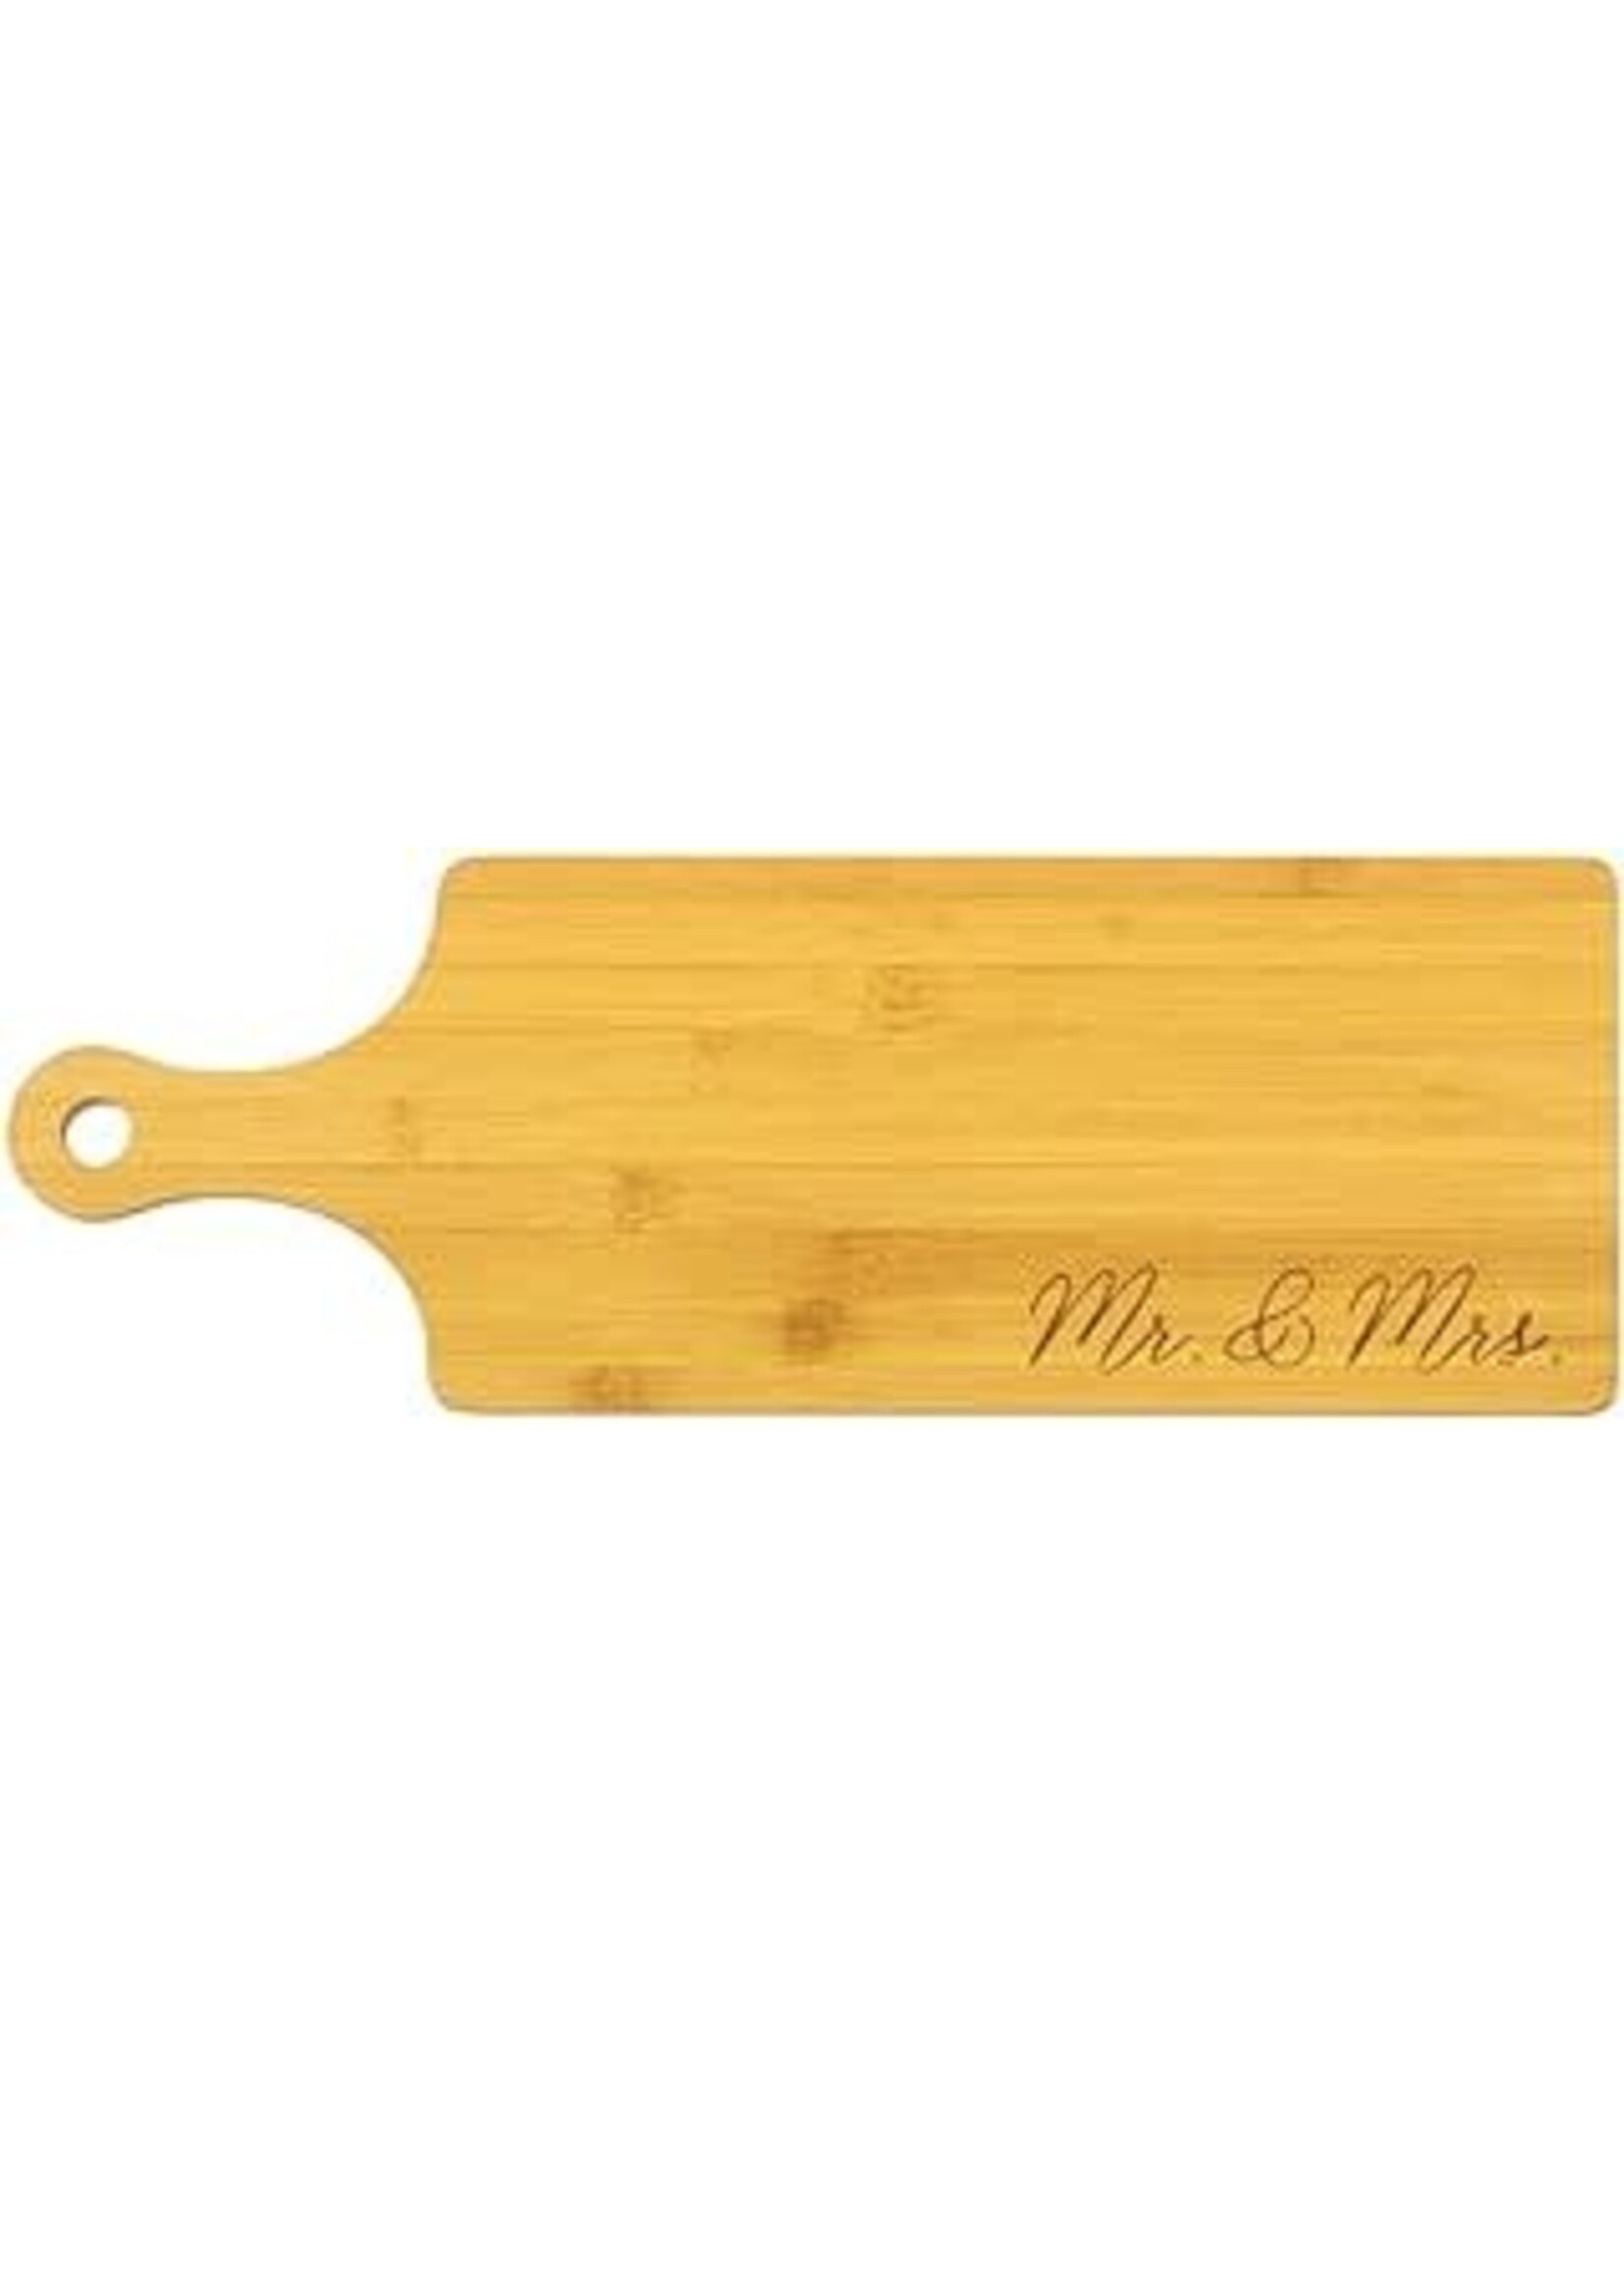 Charcuterie Board-Mr. & Mrs (6" x 17" x 3/4")